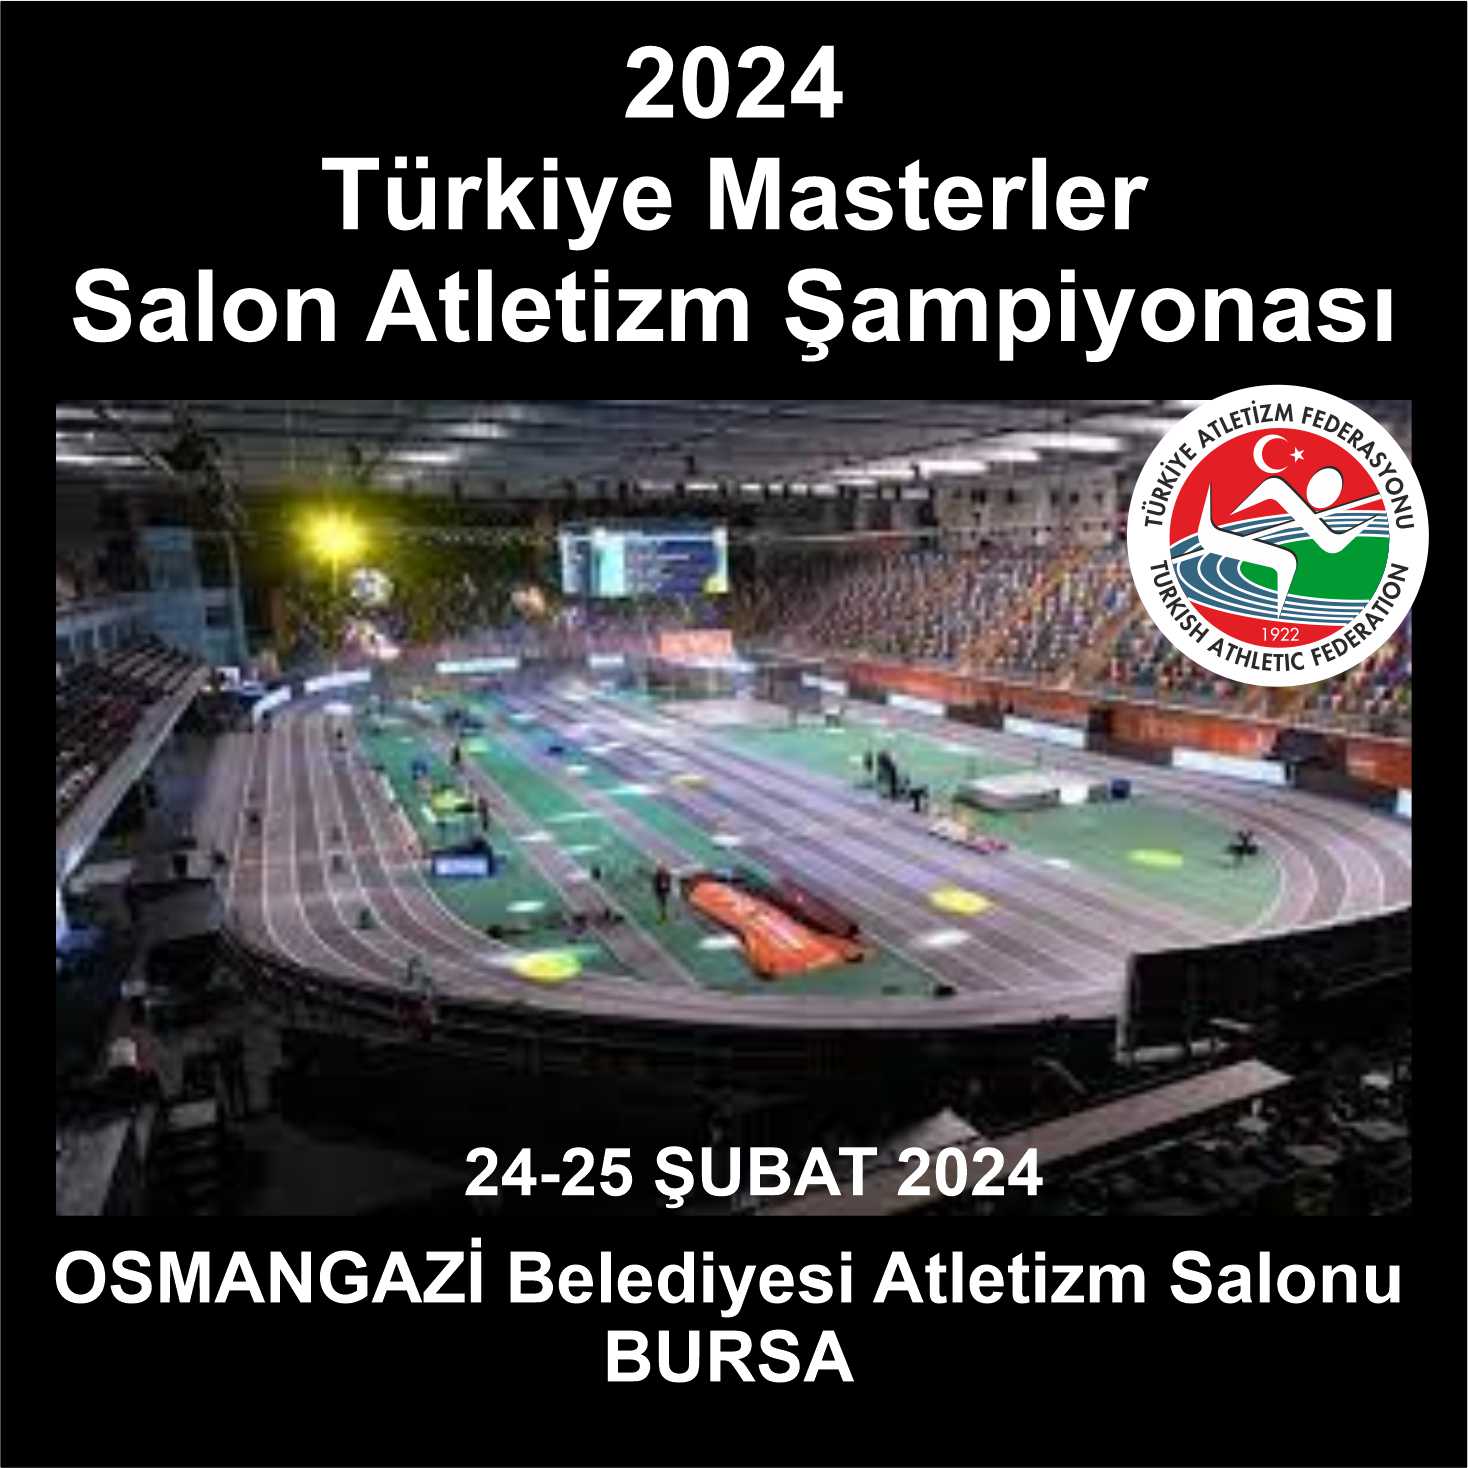 Türkiye Masterler Salon Atletizm Şampiyonası